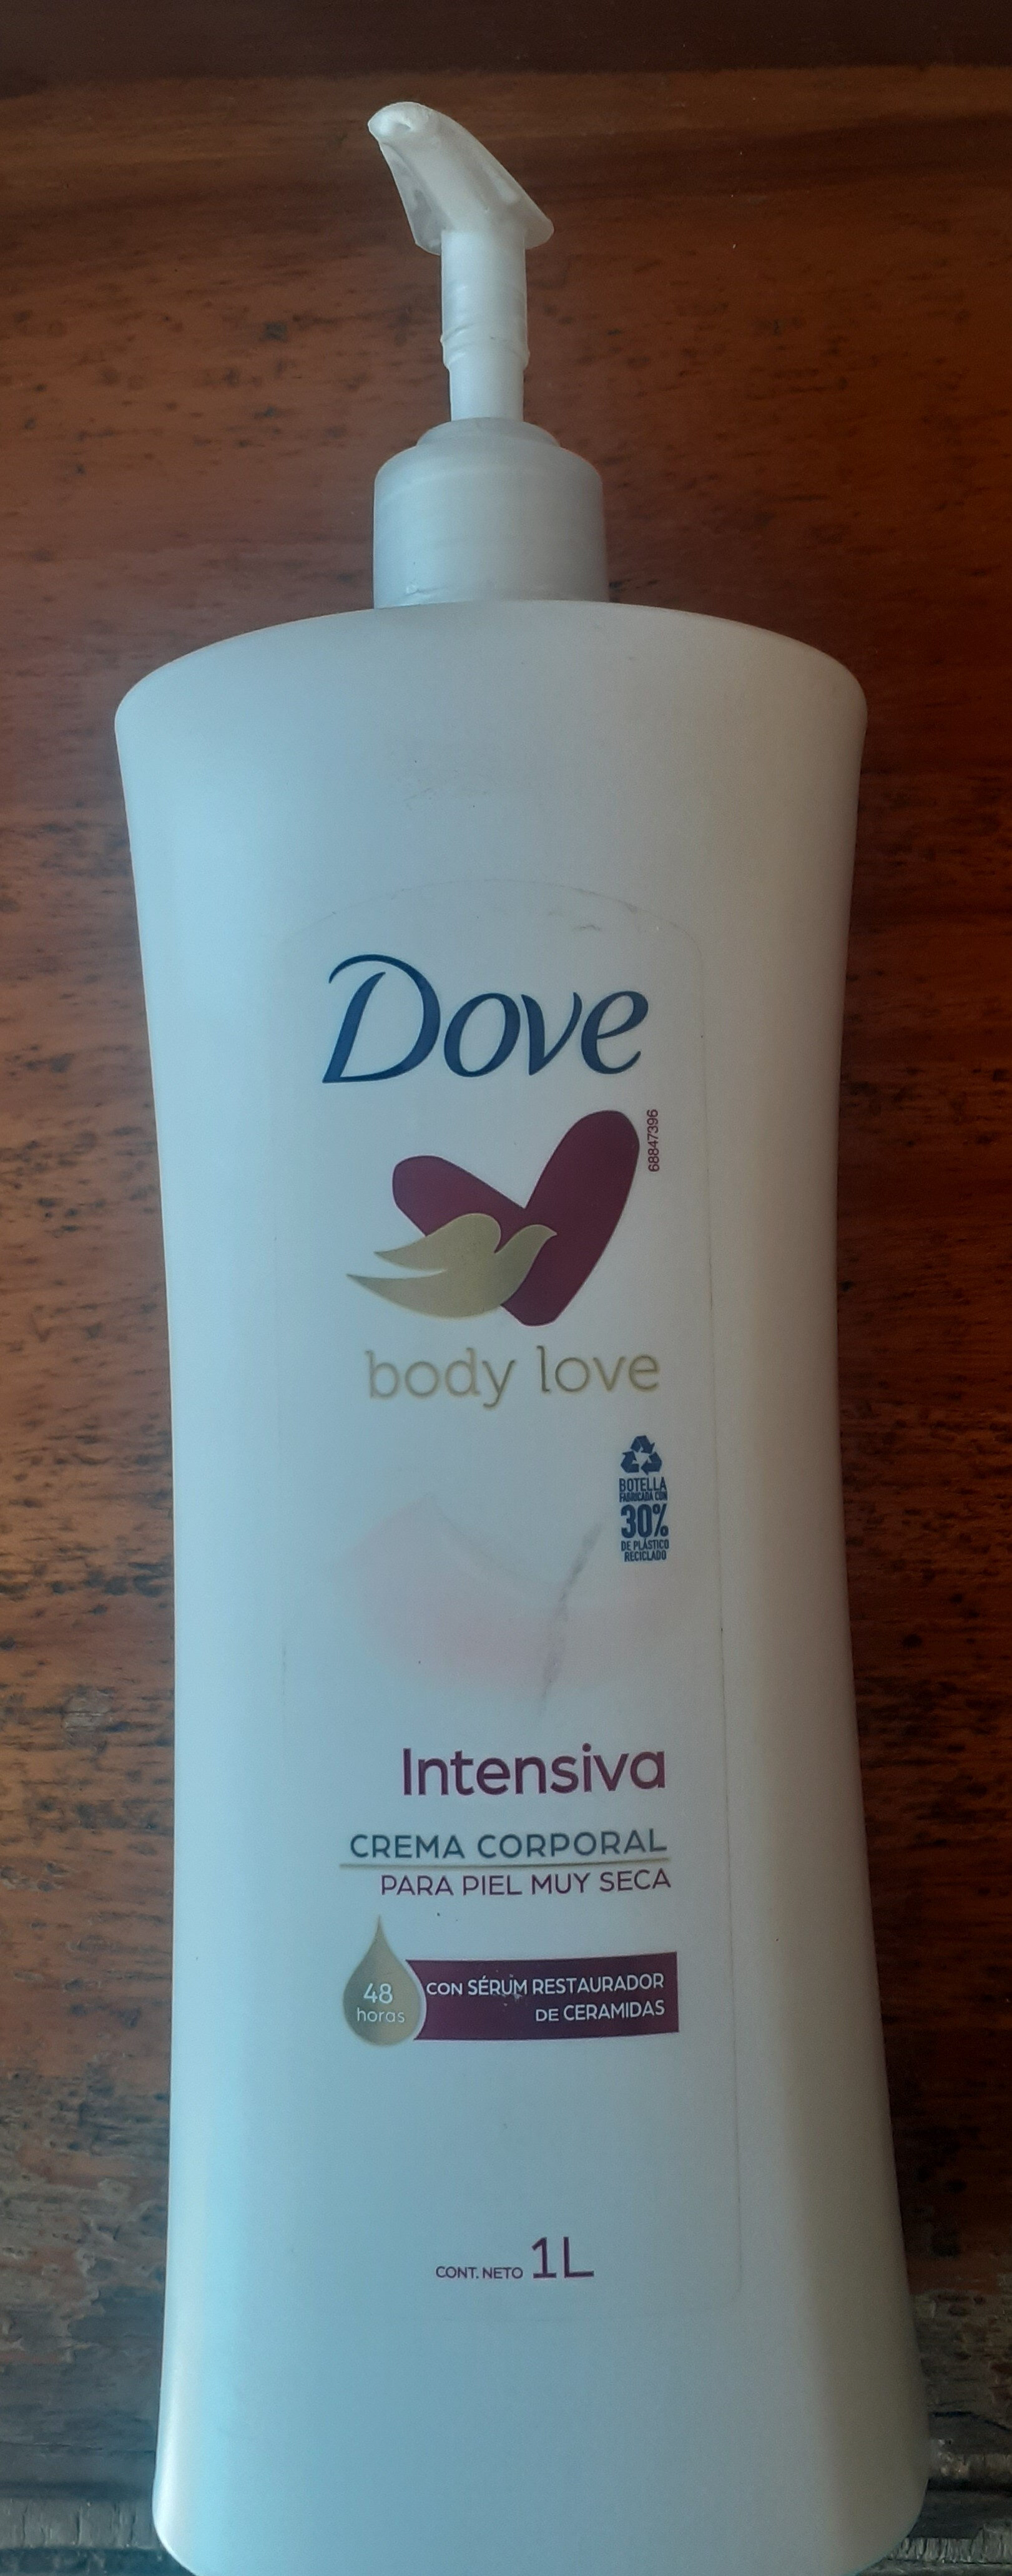 Dove Body Love Intensiva - Tuote - es